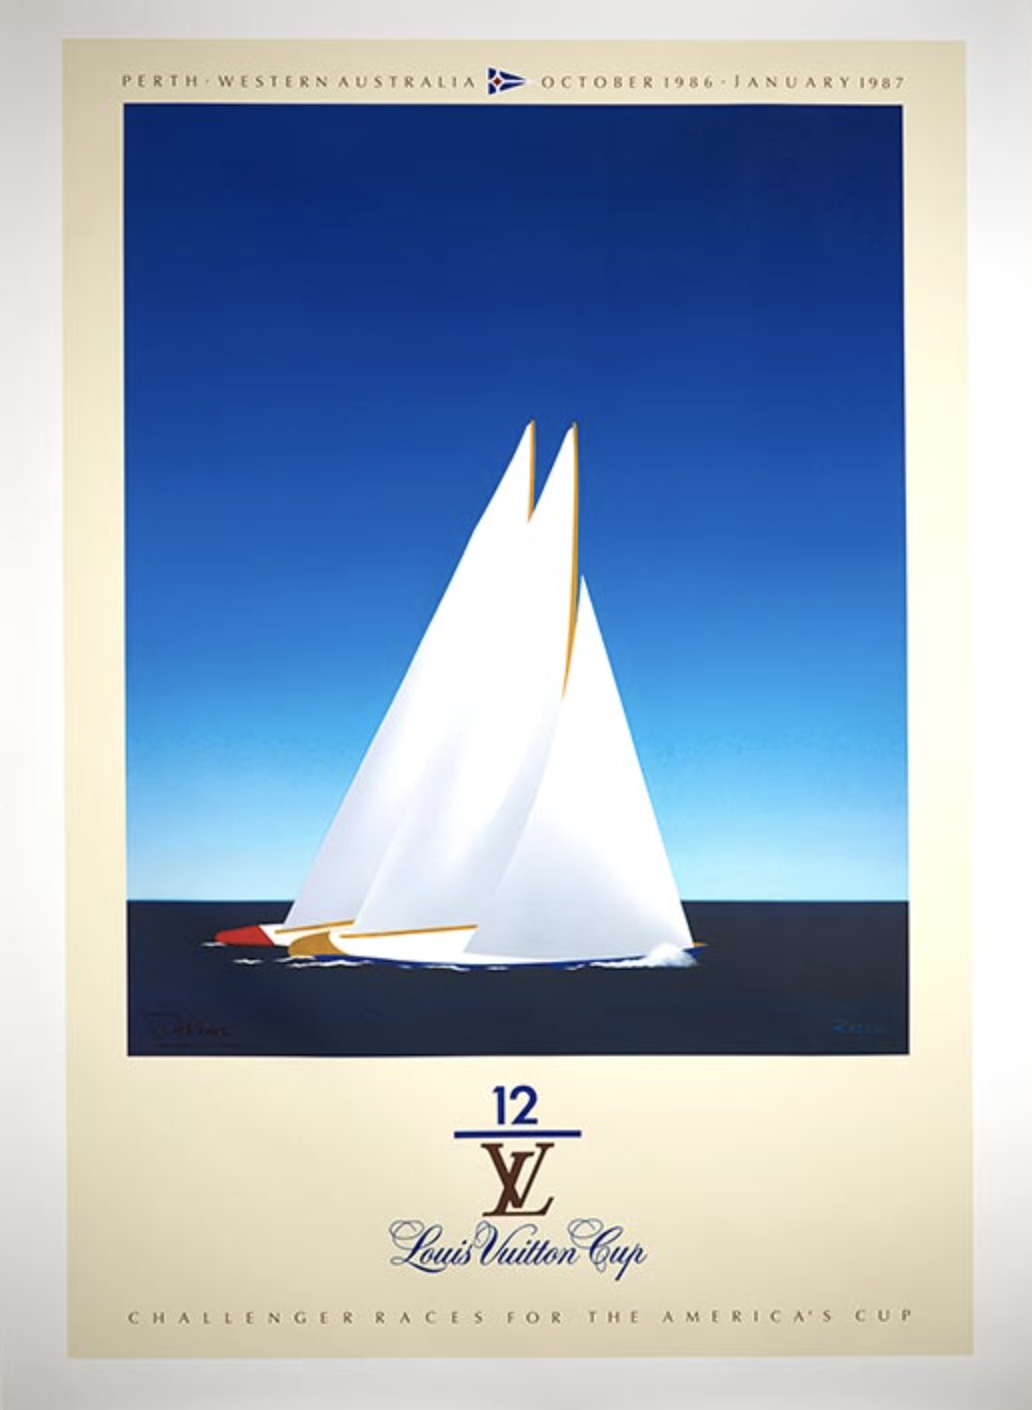 Louis Vuitton Cup 1987 Original Vintage Poster